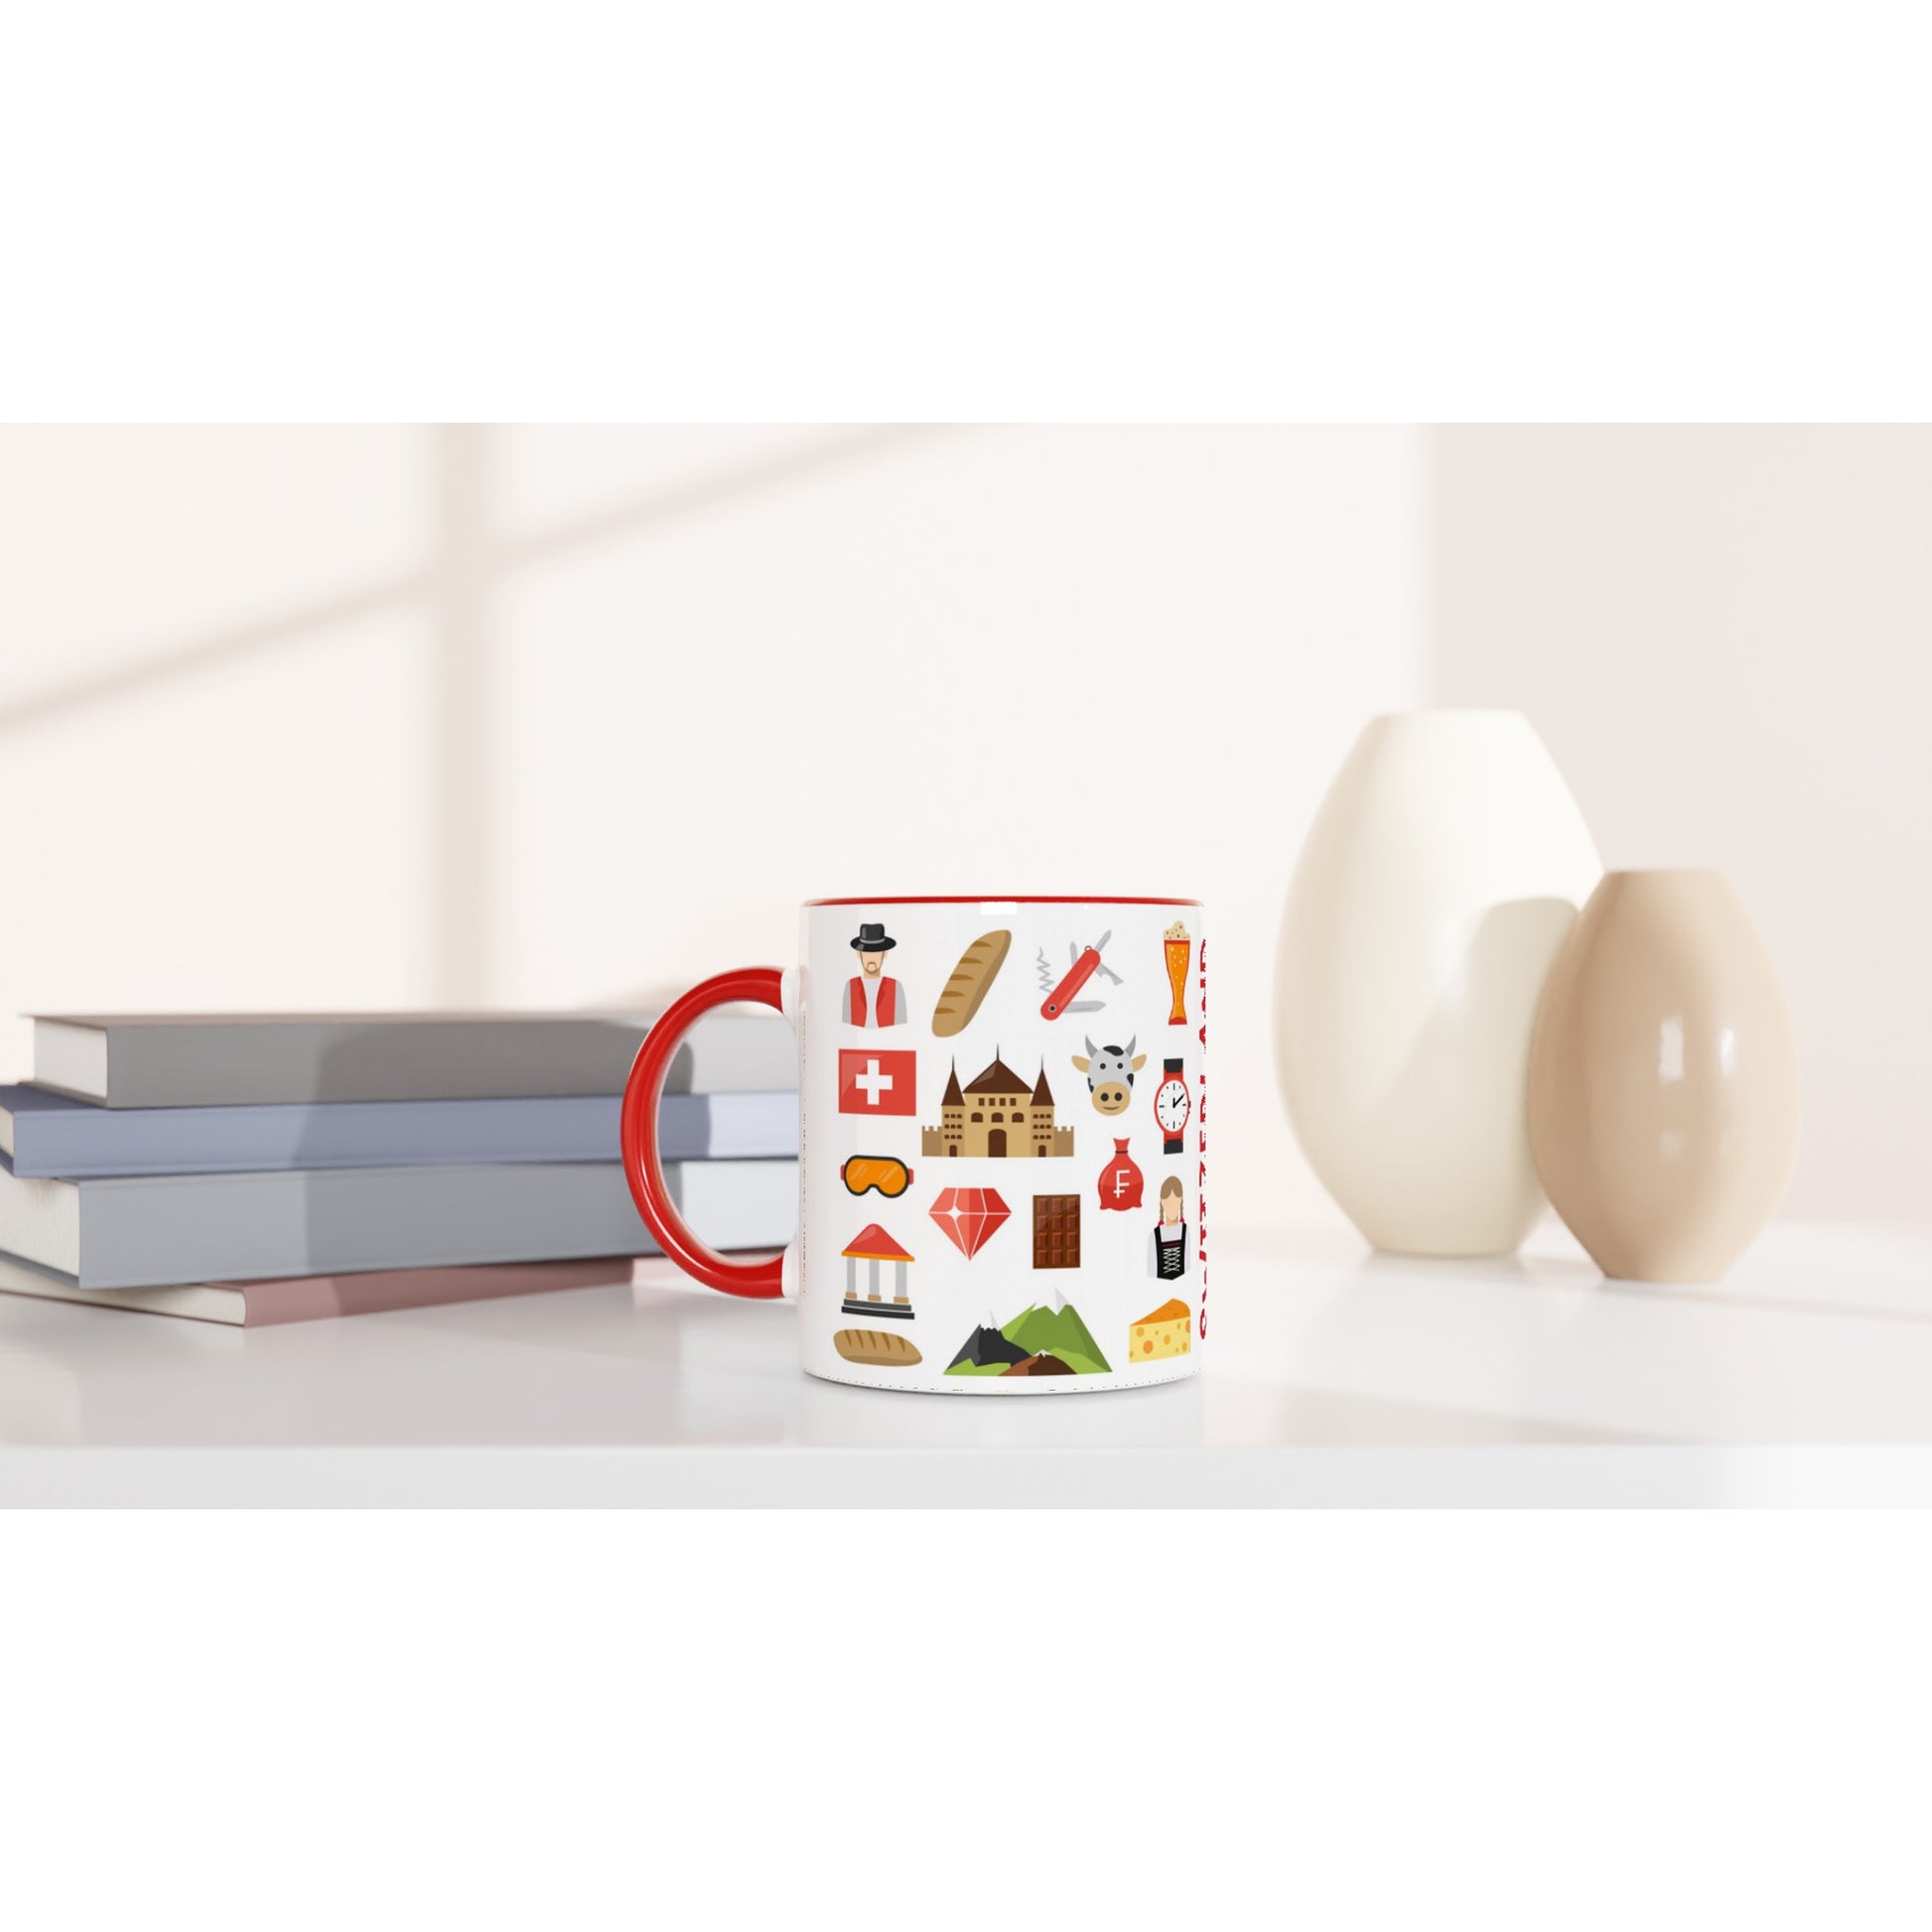 Switzerland Two Tone Ceramic Travel Mug, Starbucks Inspired - Pitchers Design